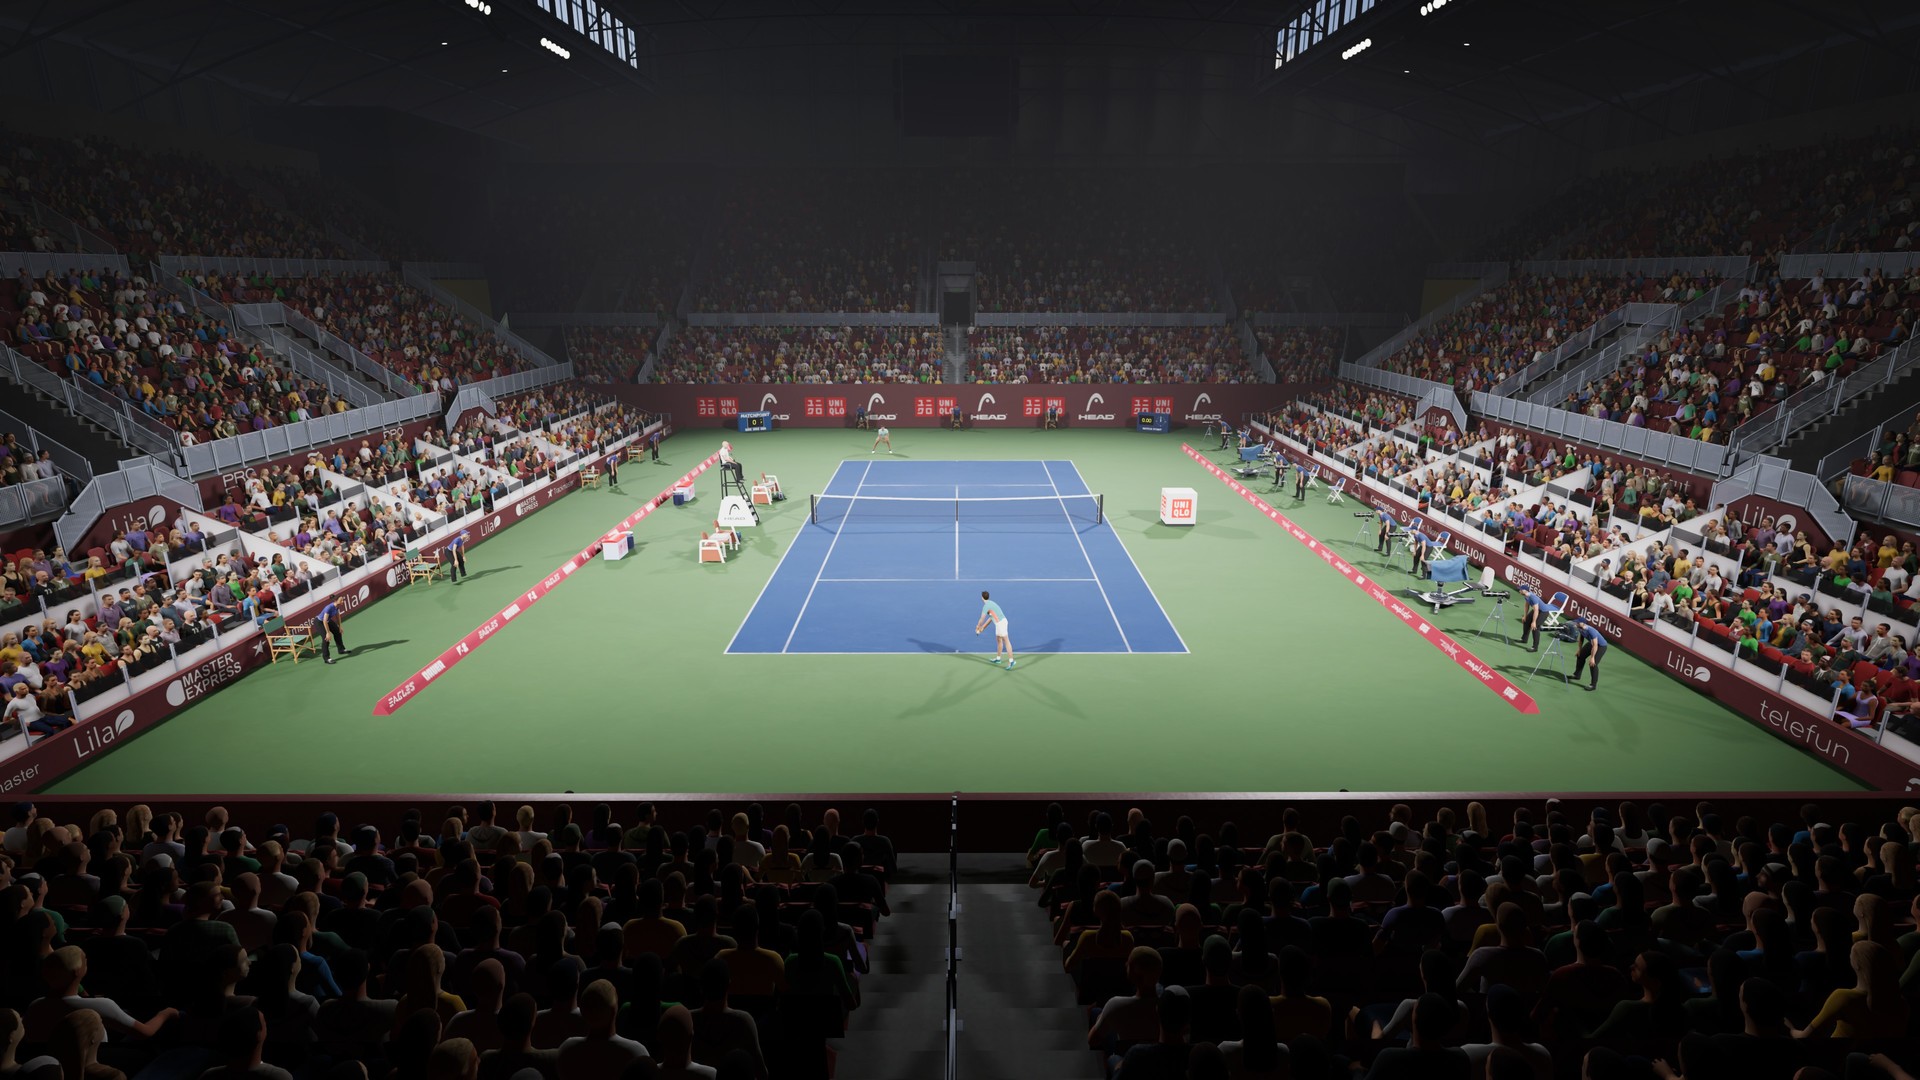 Matchpoint - Tennis Championships screenshot 42944